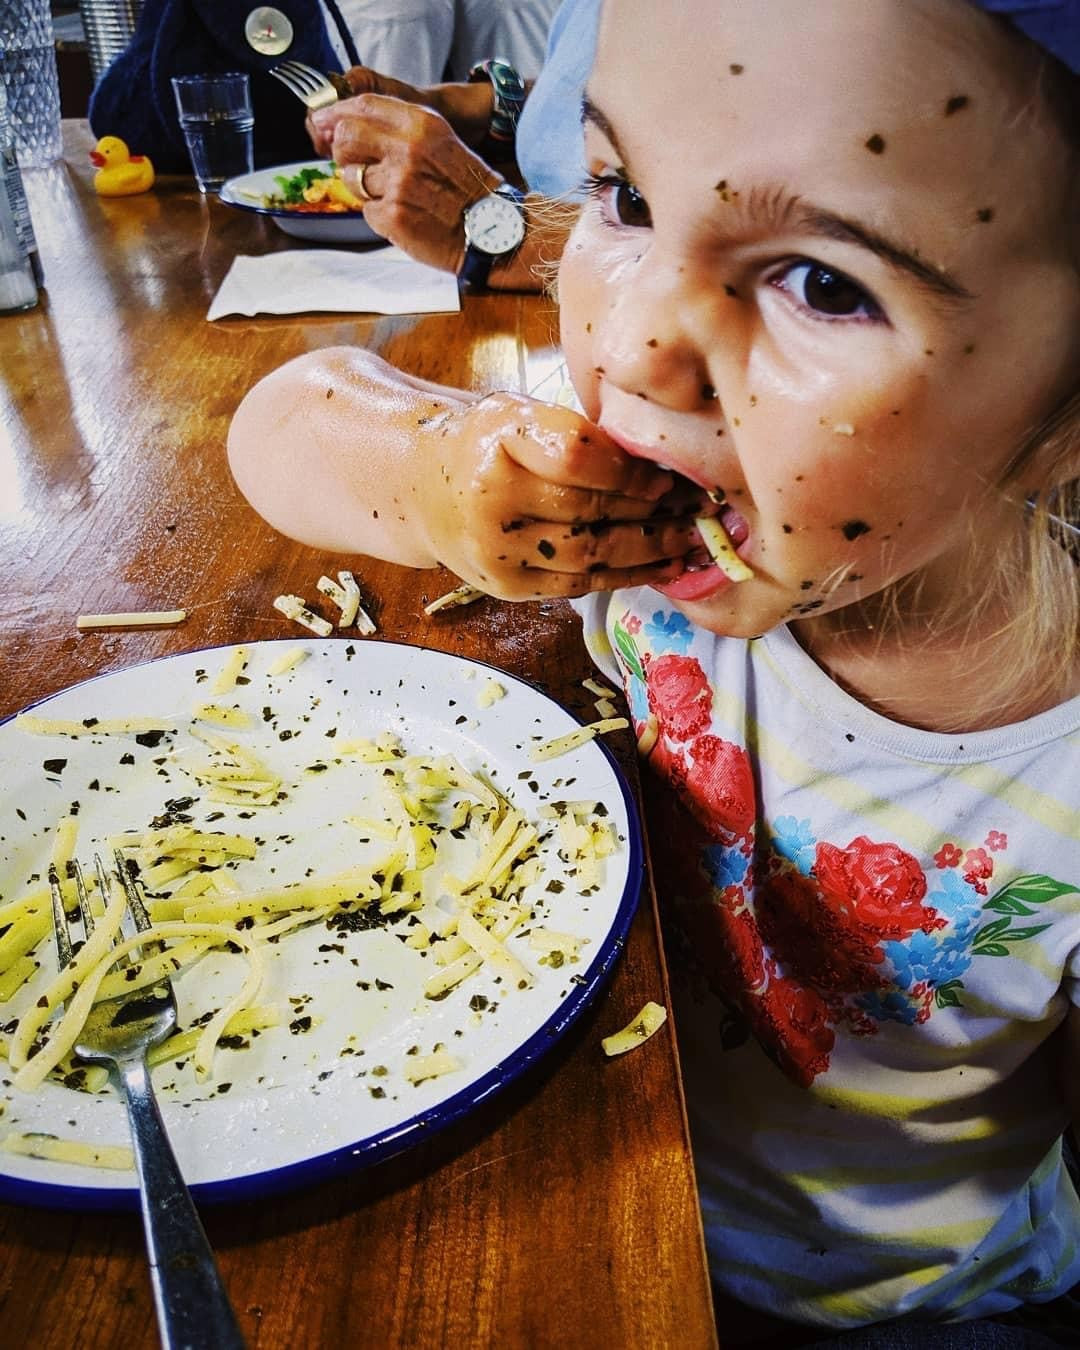 Kids eat seaweed too !!